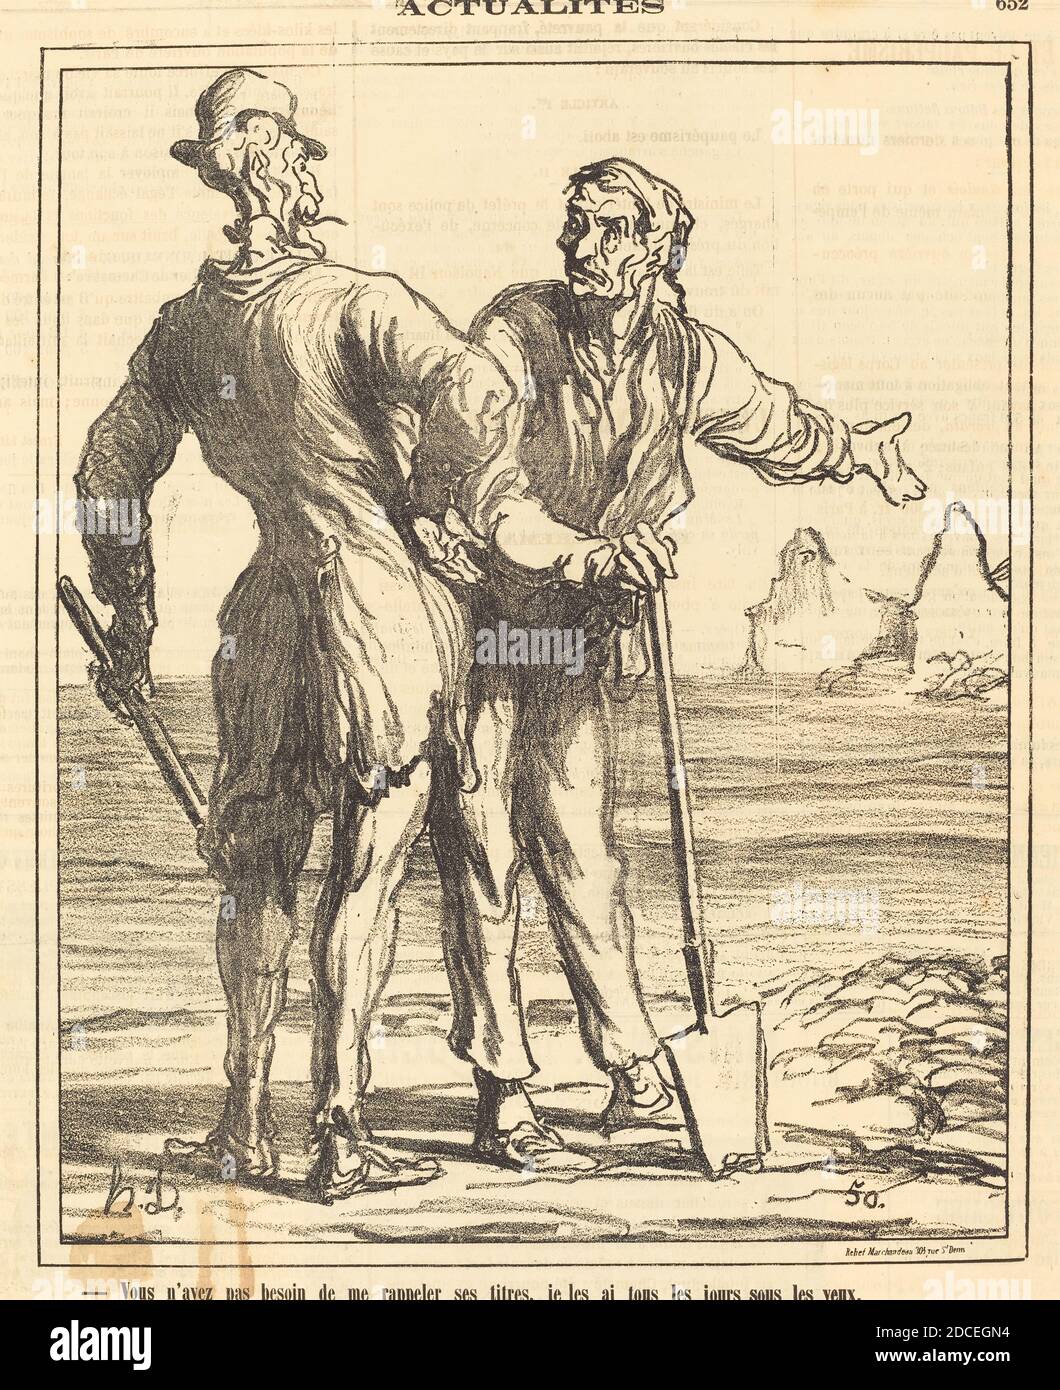 Honoré Daumier, (Künstler), französisch, 1808 - 1879, Vous n'avez pas besoin de me rappeler ses titers..., Actualités, (Serie), 1871, Gillotype auf Zeitungspapier Stockfoto